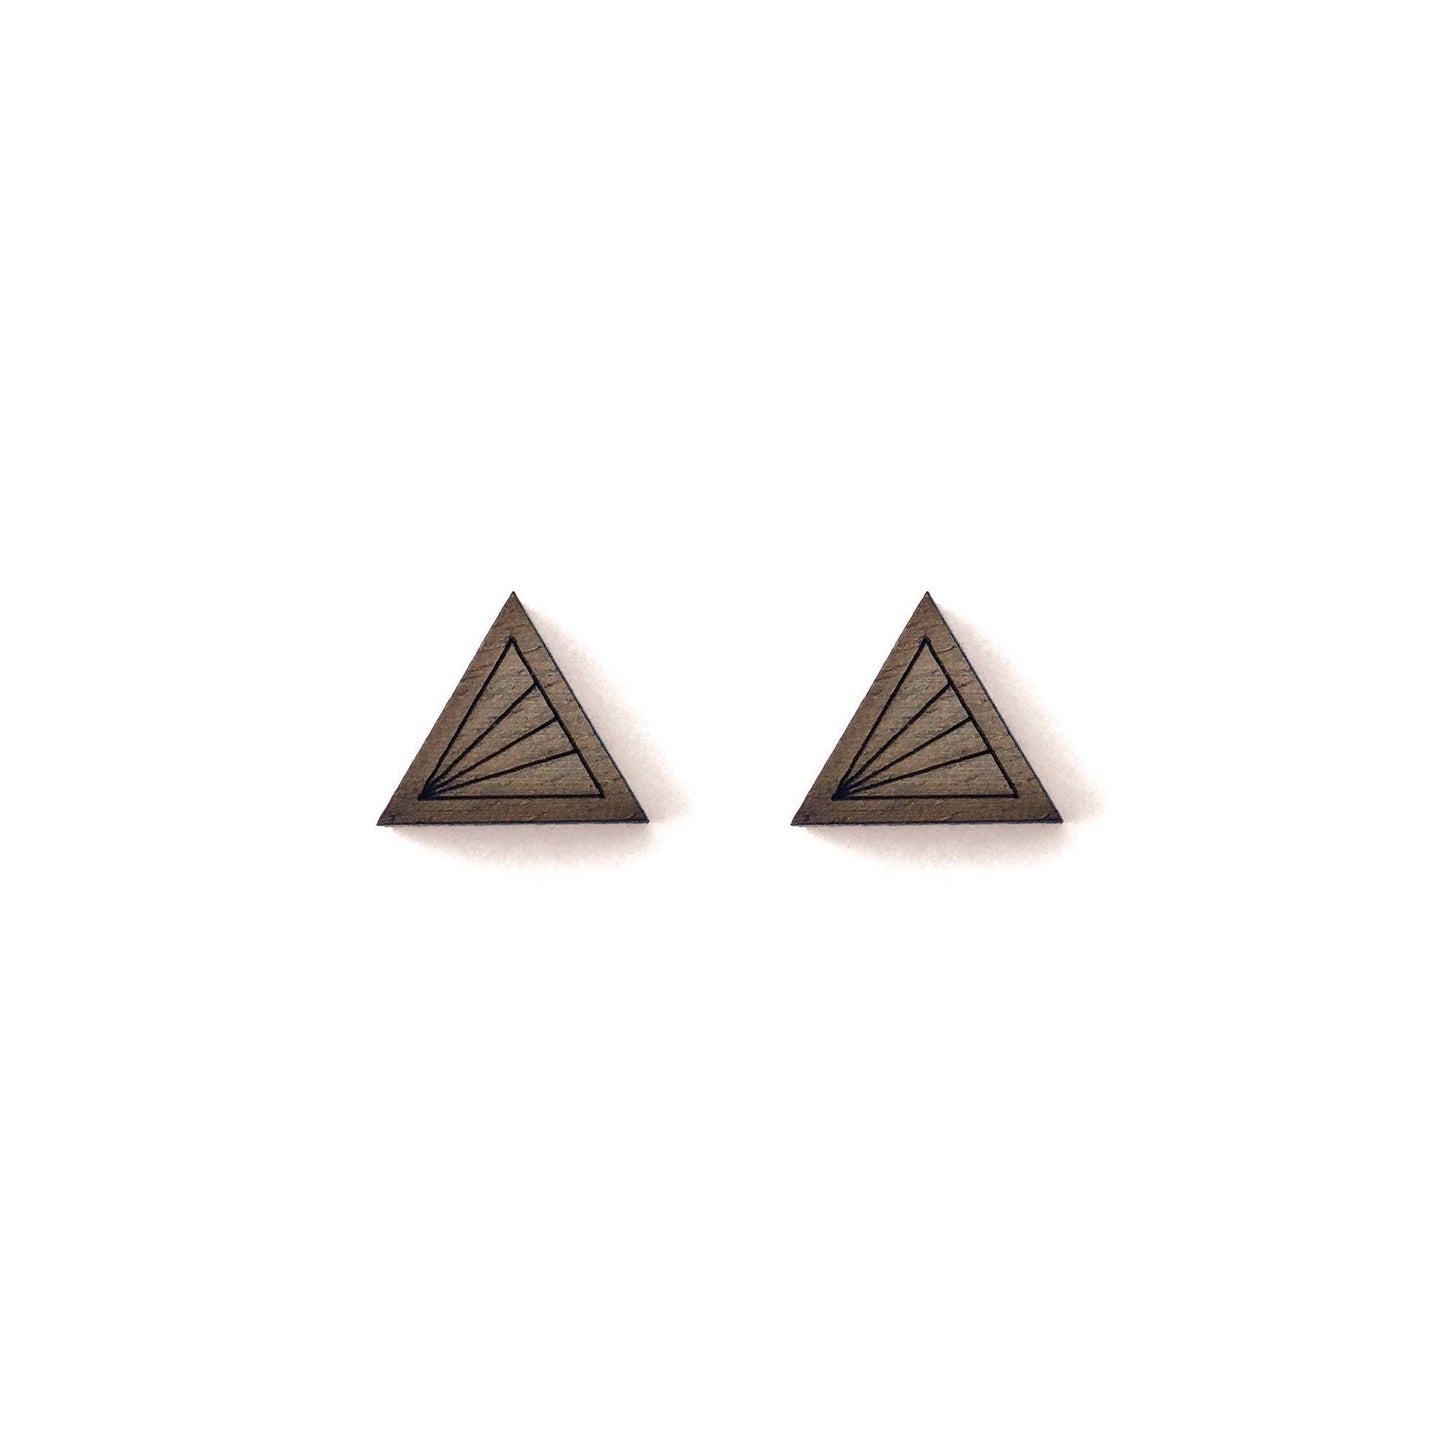 Cabin + Cub - Walnut Geometric Earrings - Triangle